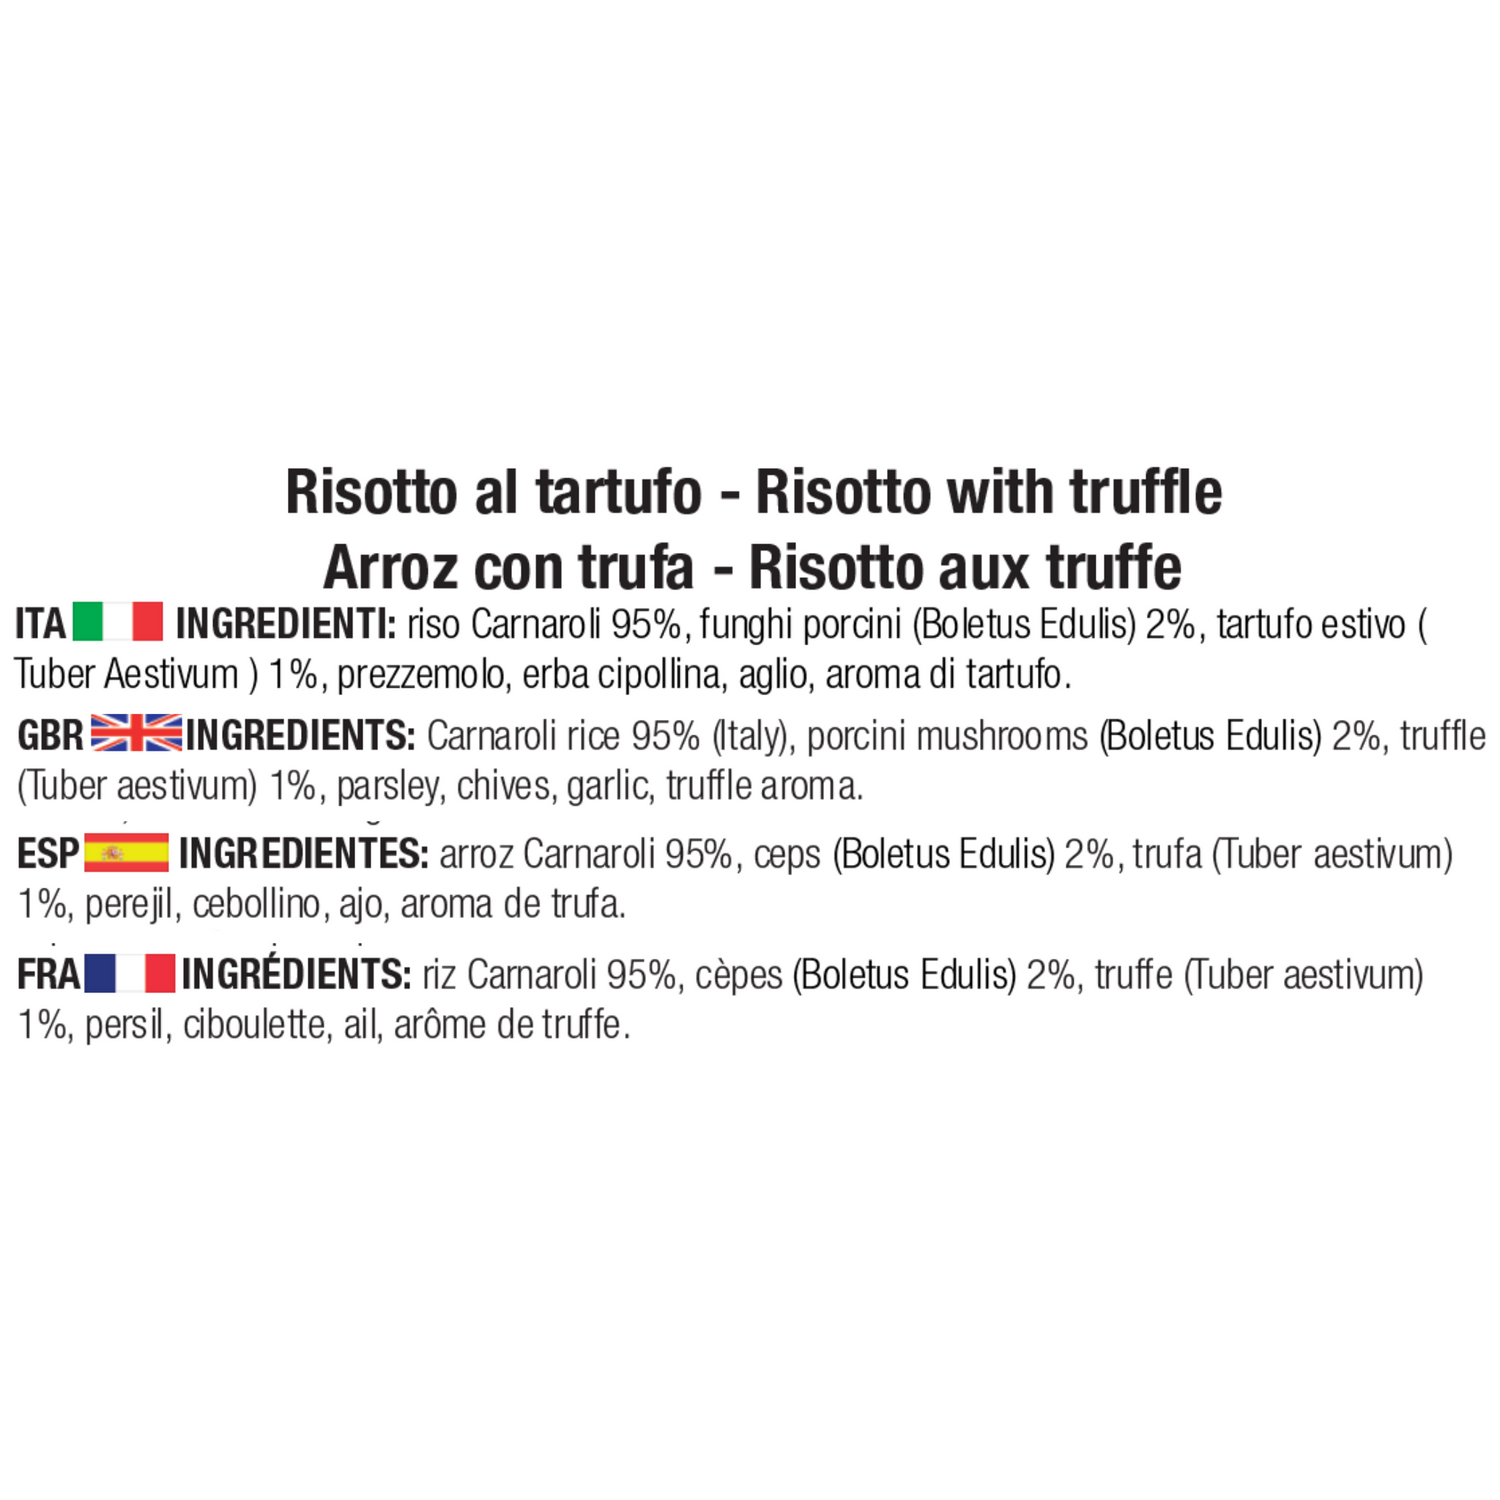 Ingredienti risotto al tartufo: riso Carnaroli 95%, funghi porcini (Boletus Edulis) 2%, tartufo estivo (Tuber Aestivum) 1%, prezzemolo, erba cipollina, aglio, aroma di tartufo.